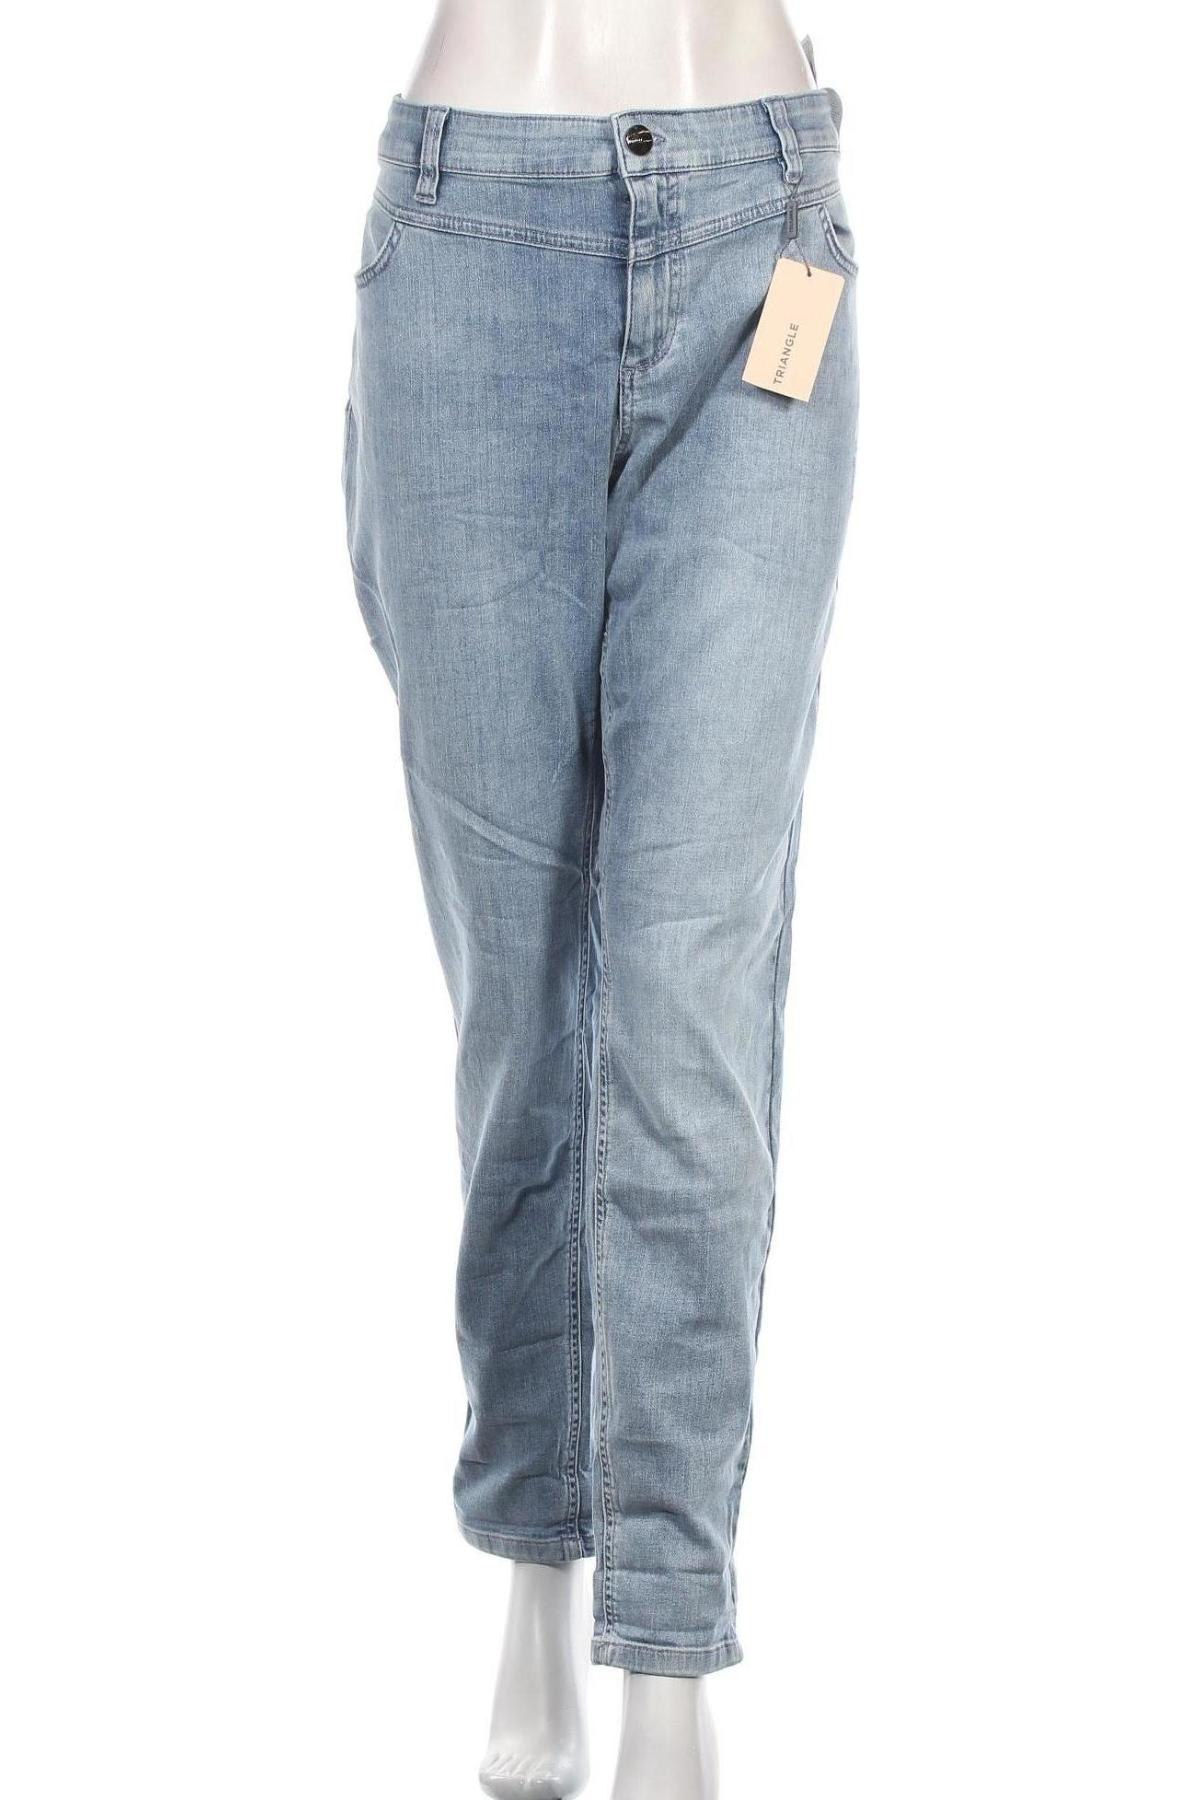 Damskie jeansy Triangle By s.Oliver, Rozmiar XXL, Kolor Niebieski, 98% bawełna, 2% elastyna, Cena 223,13 zł